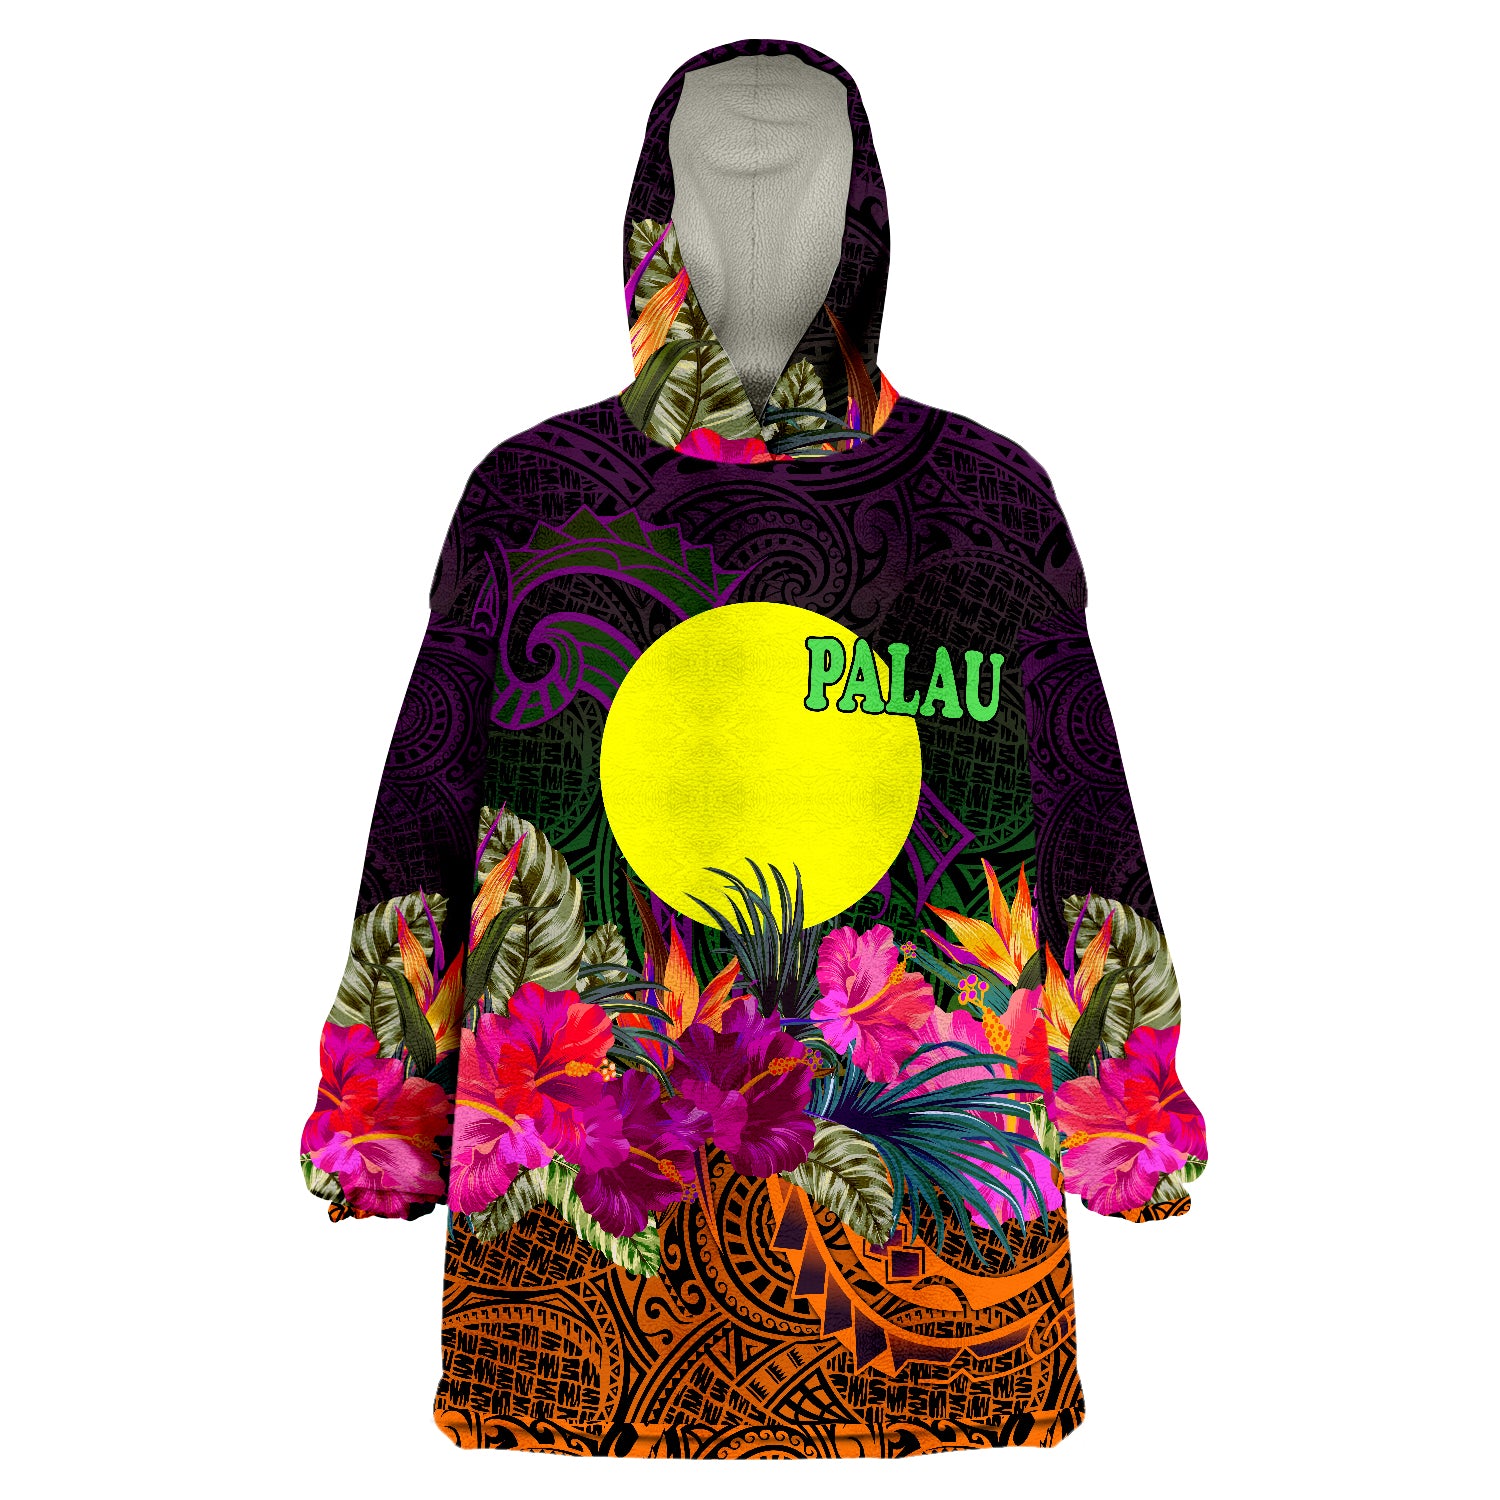 Palau Summer Hibiscus Wearable Blanket Hoodie LT9 Unisex One Size - Polynesian Pride